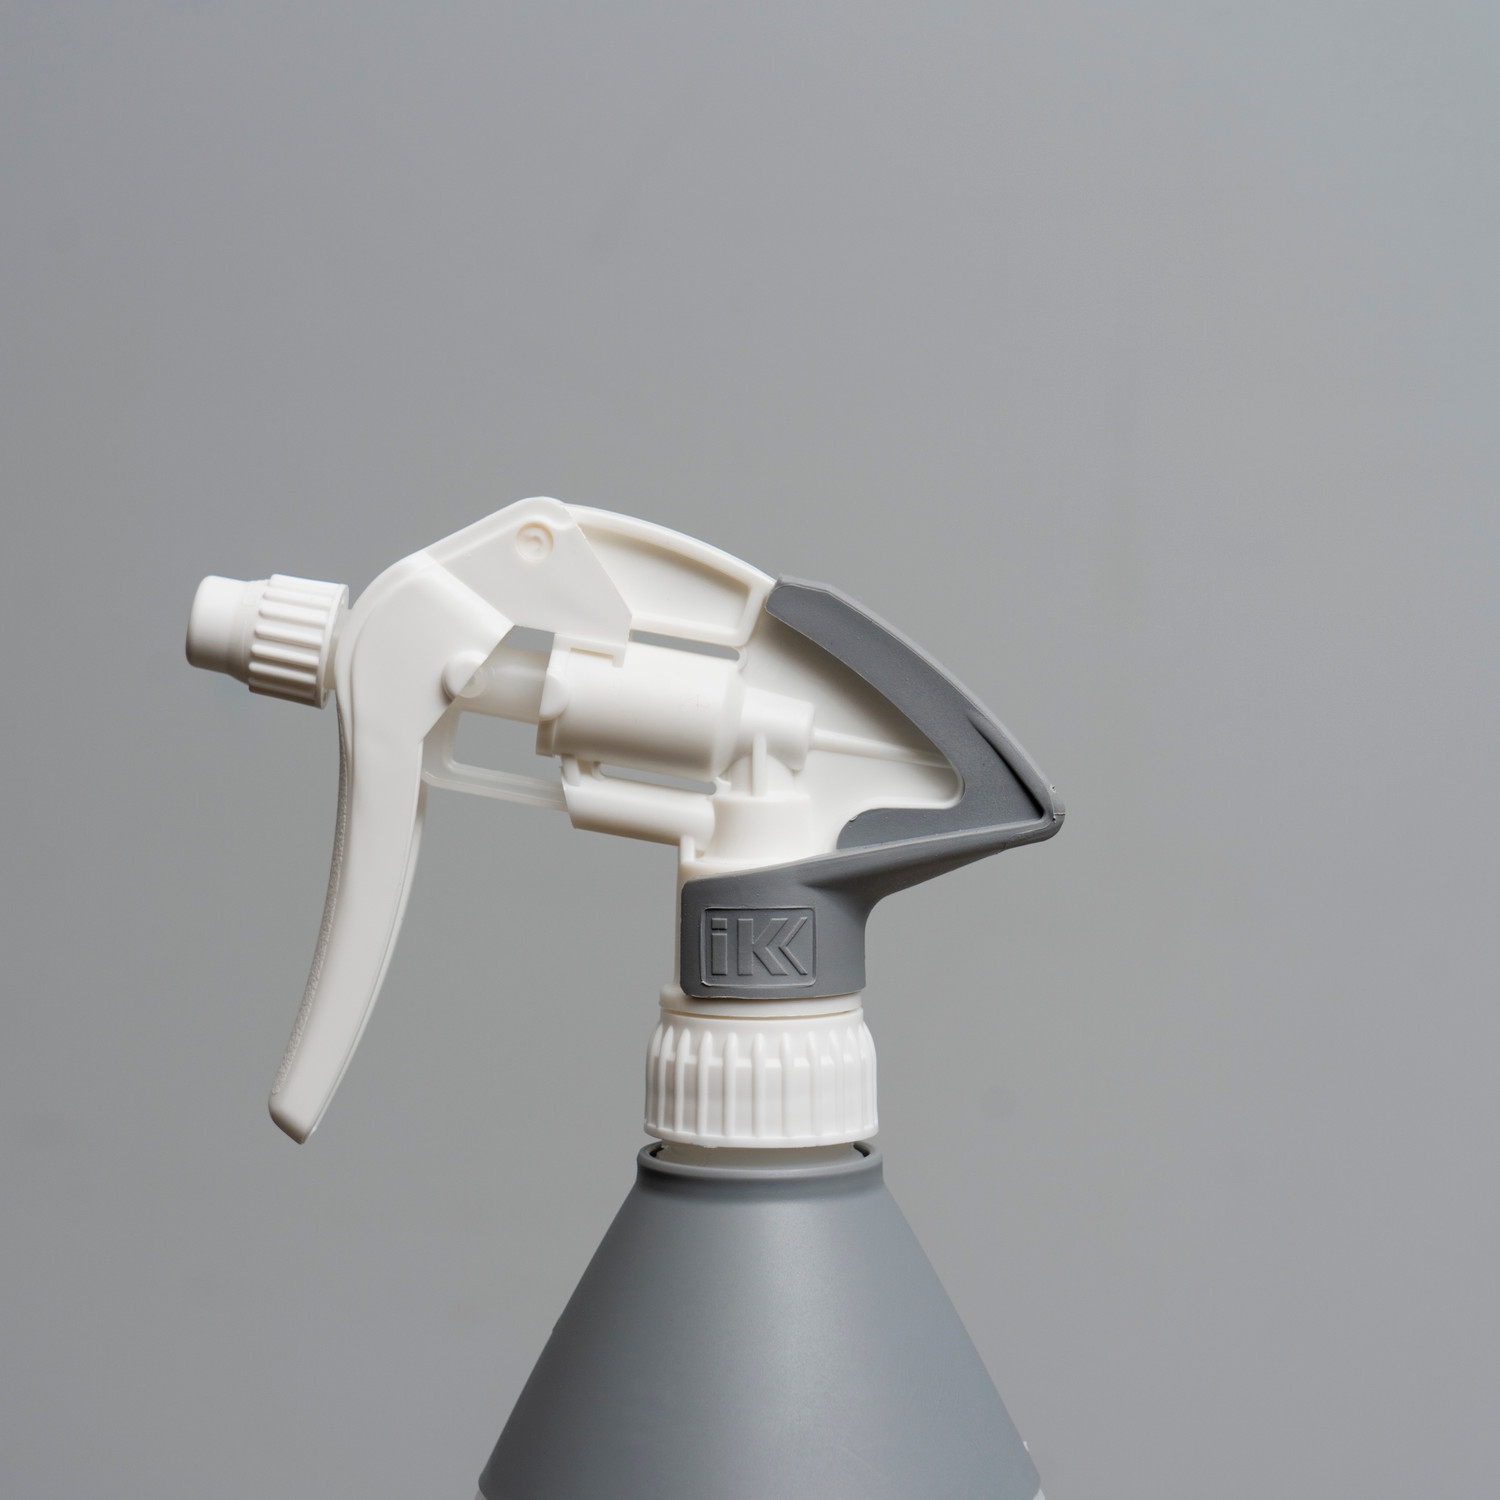 IK HC TR 1 Spray Bottle For Oils & Hydrocarbon Based Solvents